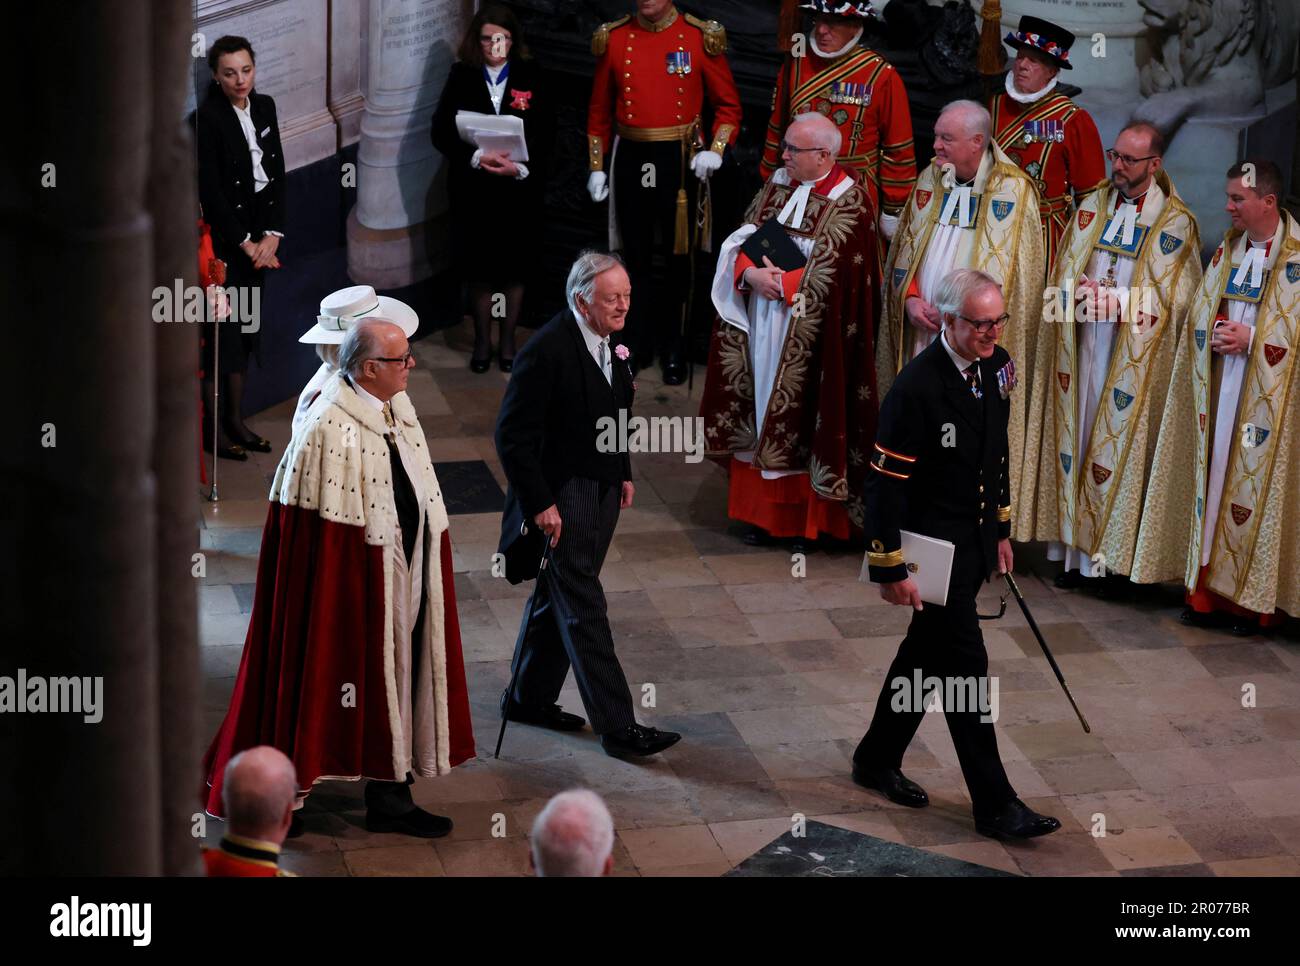 Andrew Parker Bowles kommt vor der Krönung von König Karl III. Und Königin Camilla in Westminster Abbey, London. Foto: Samstag, 6. Mai 2023. Stockfoto